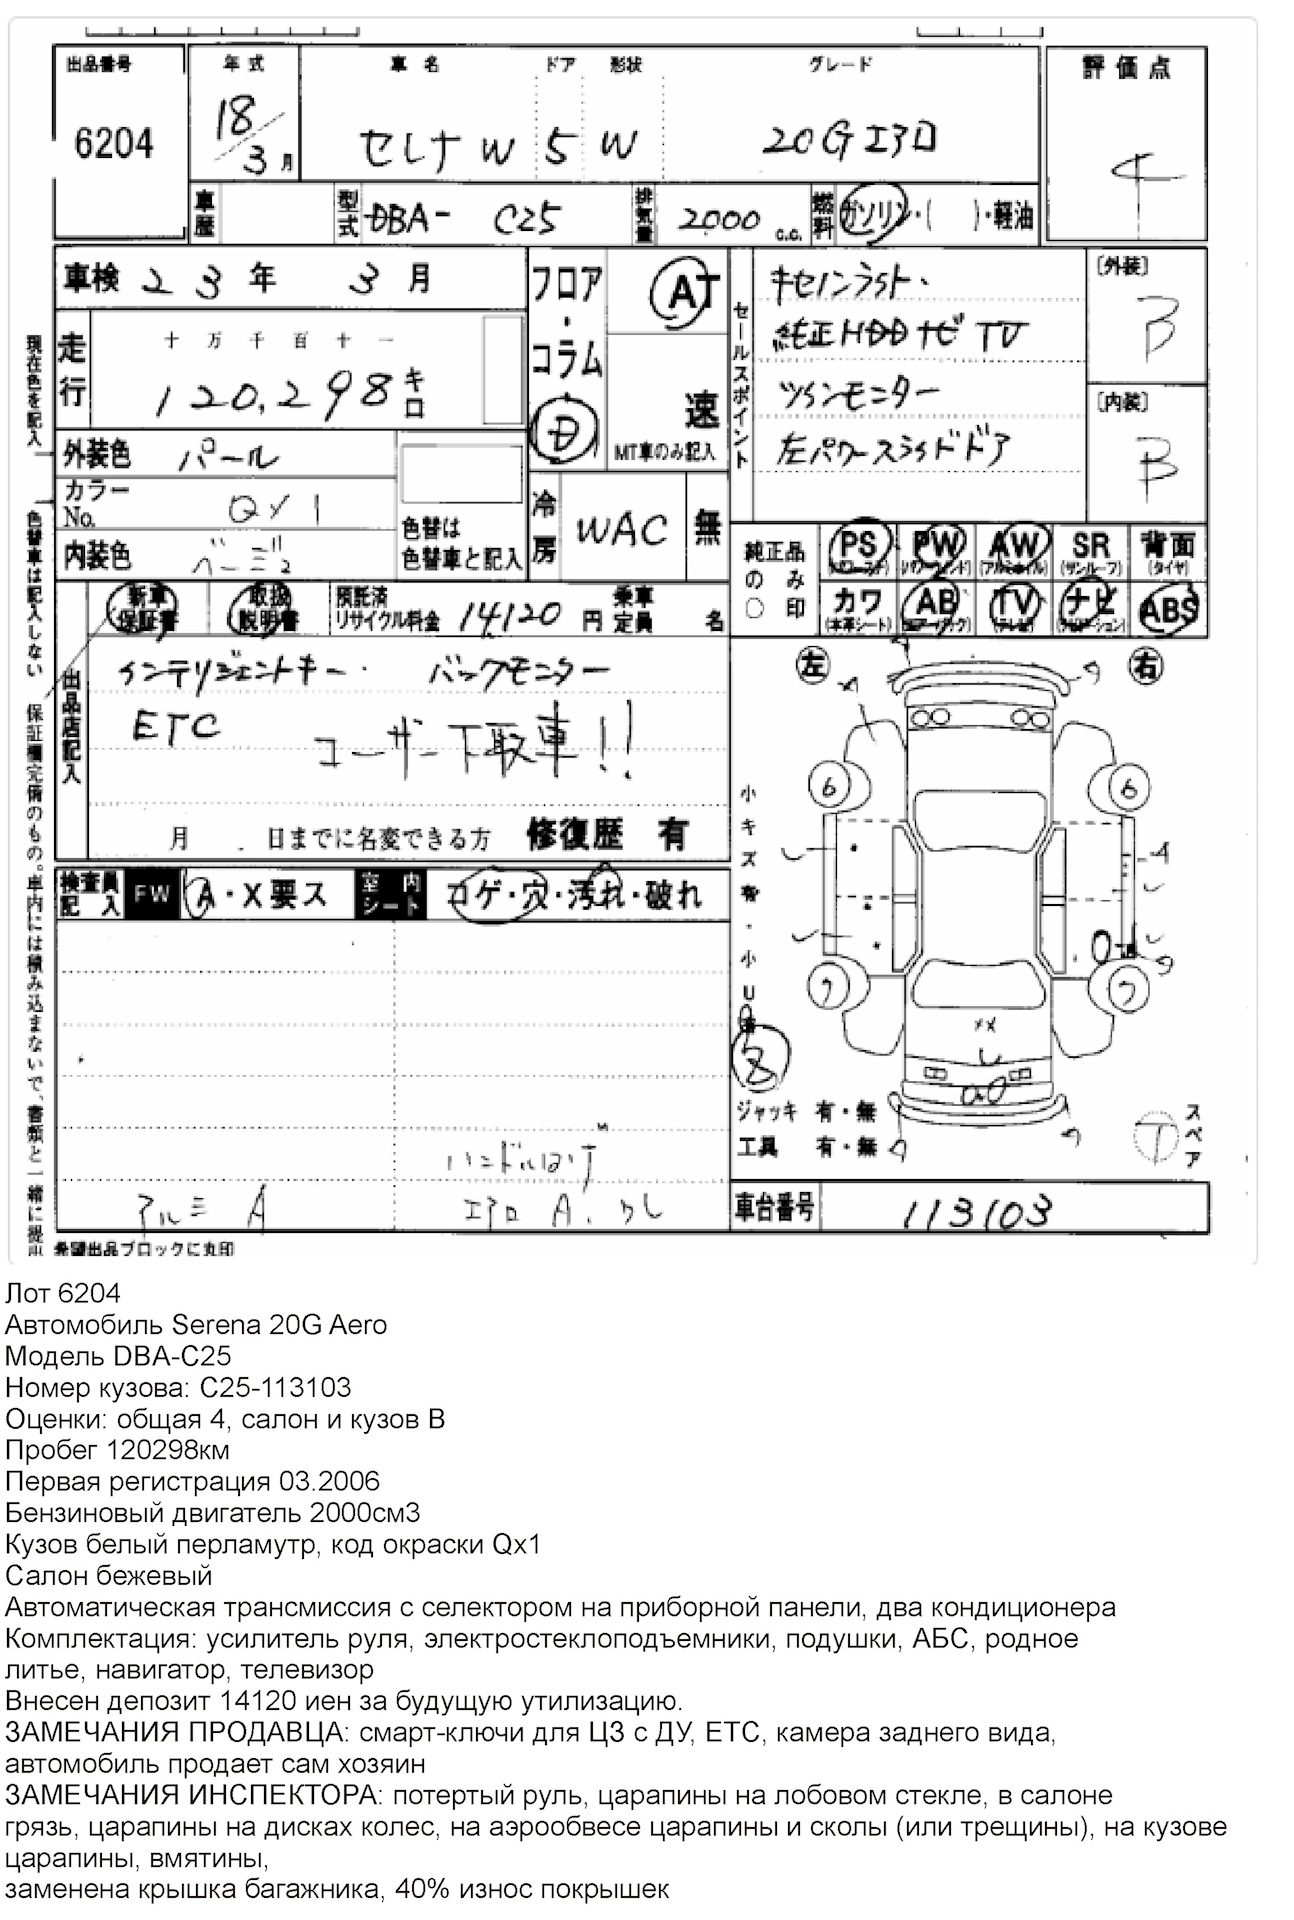 W2 в аукционном листе. Аукционный лист Nissan Leaf Zeo-010883. W1 Аукционный лист японского авто. Аукционный лист расшифровка повреждений. Расшифровка аукционного листа японского автомобиля.